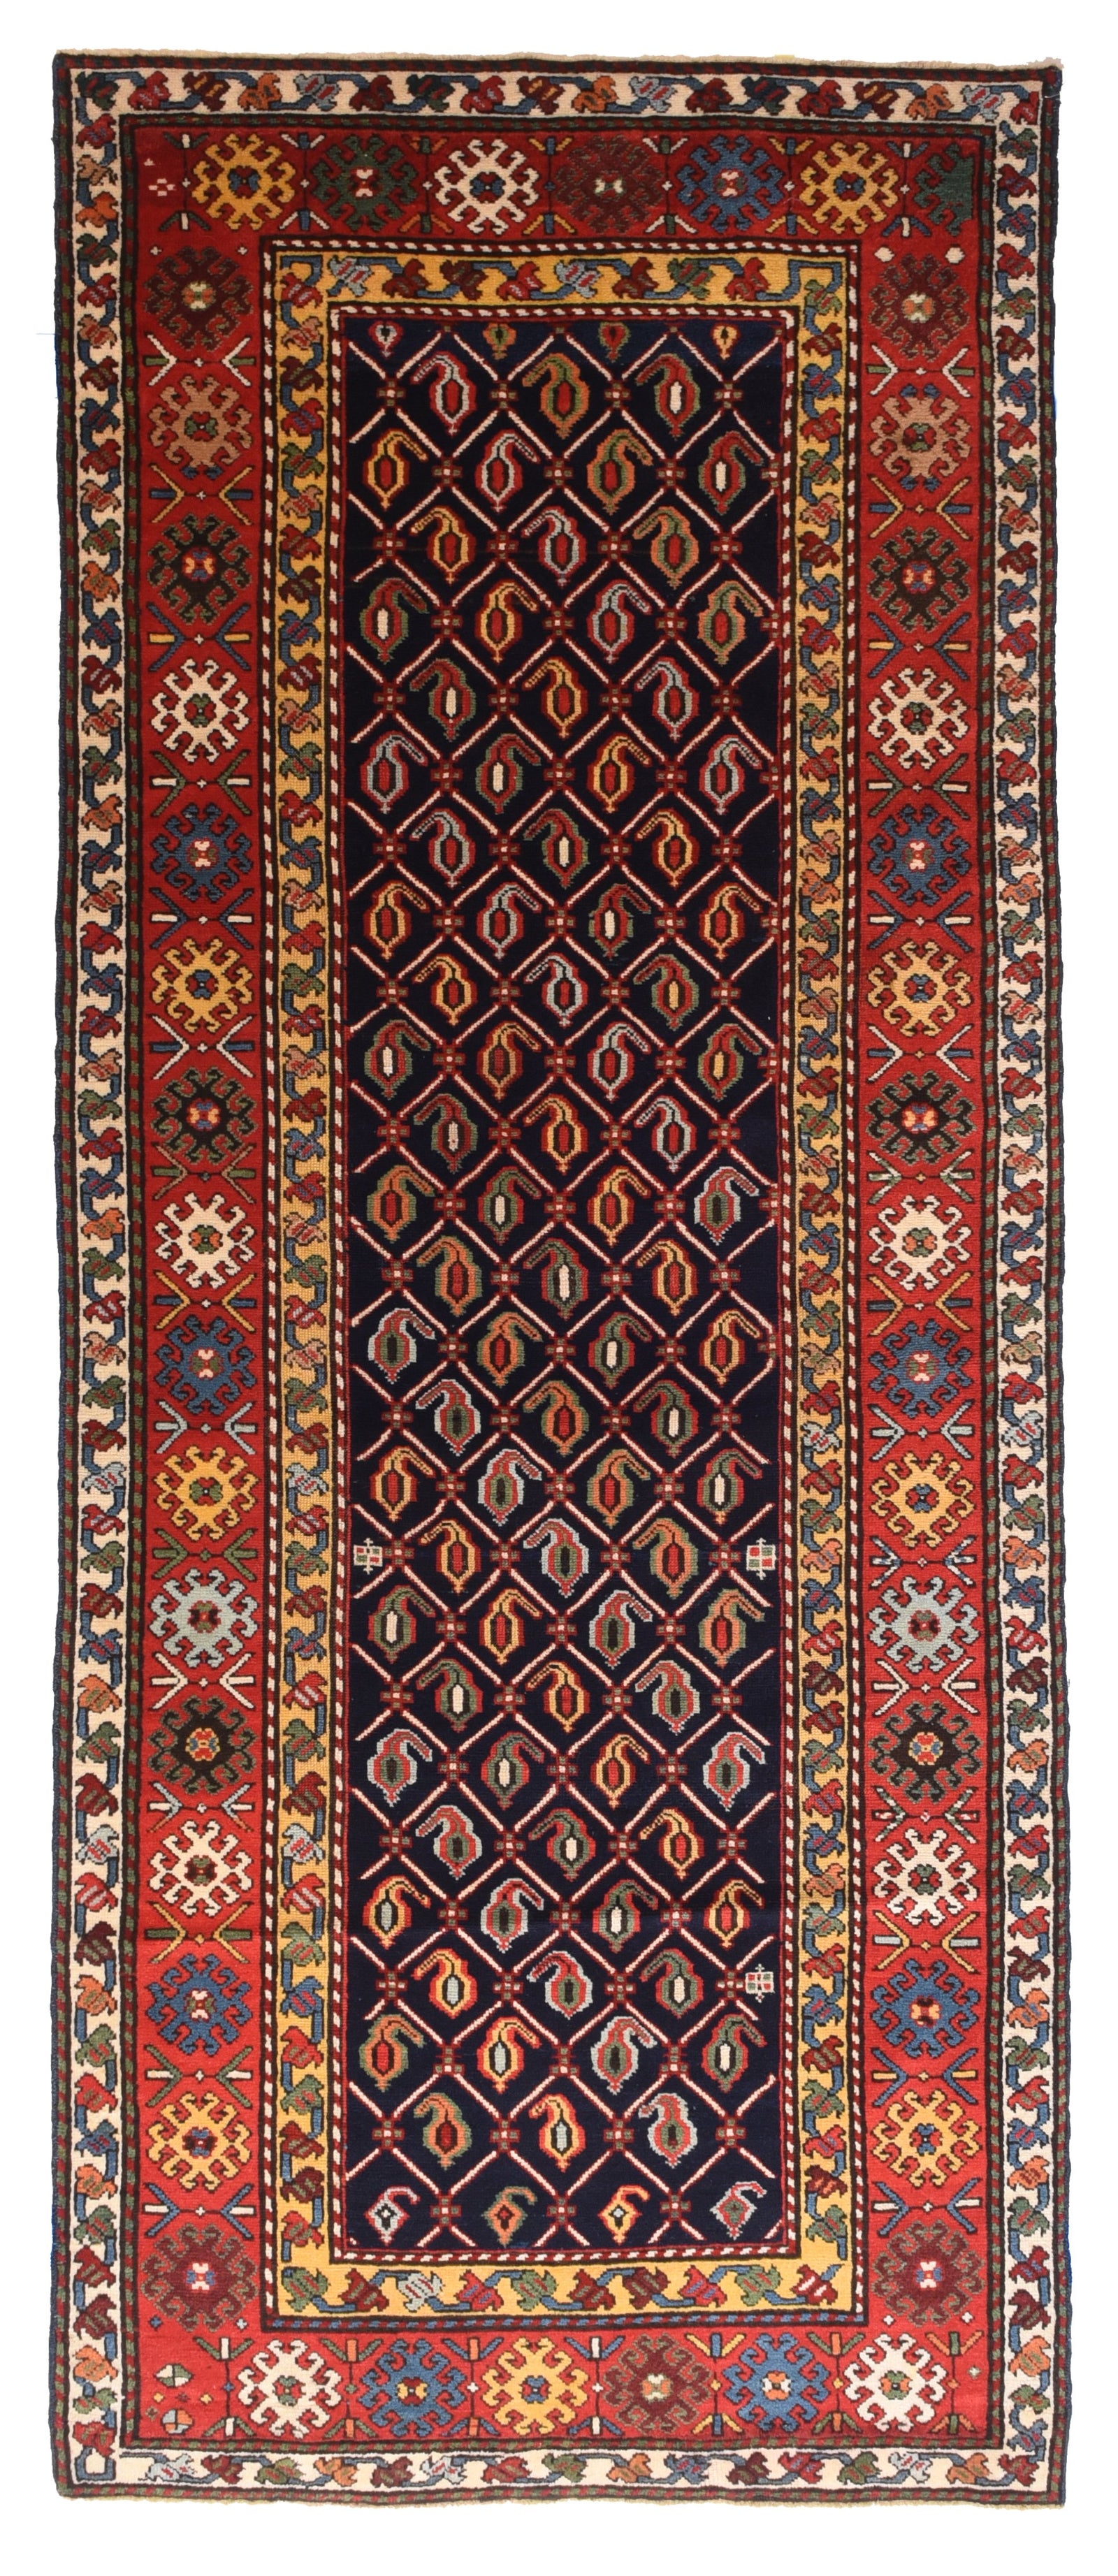 Antique Red Shirvan Caucasian Russian Area Rug